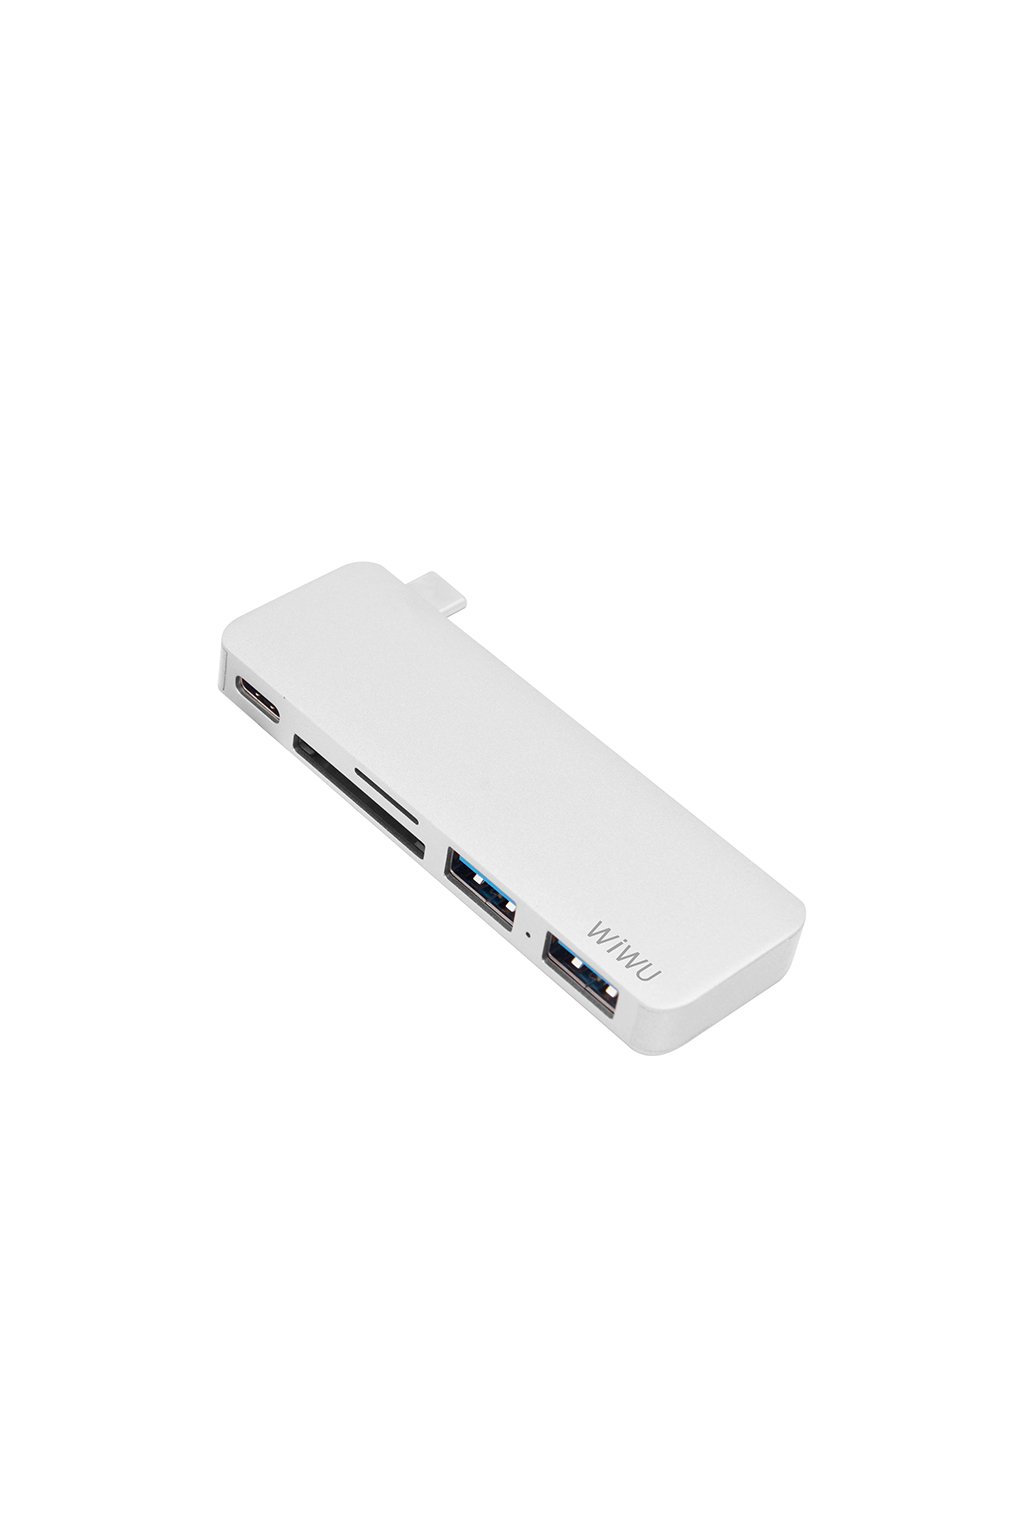 WiWU USB-C multi-port hub pro USB/USB-C/SDHC/microSDHC T6 5v1